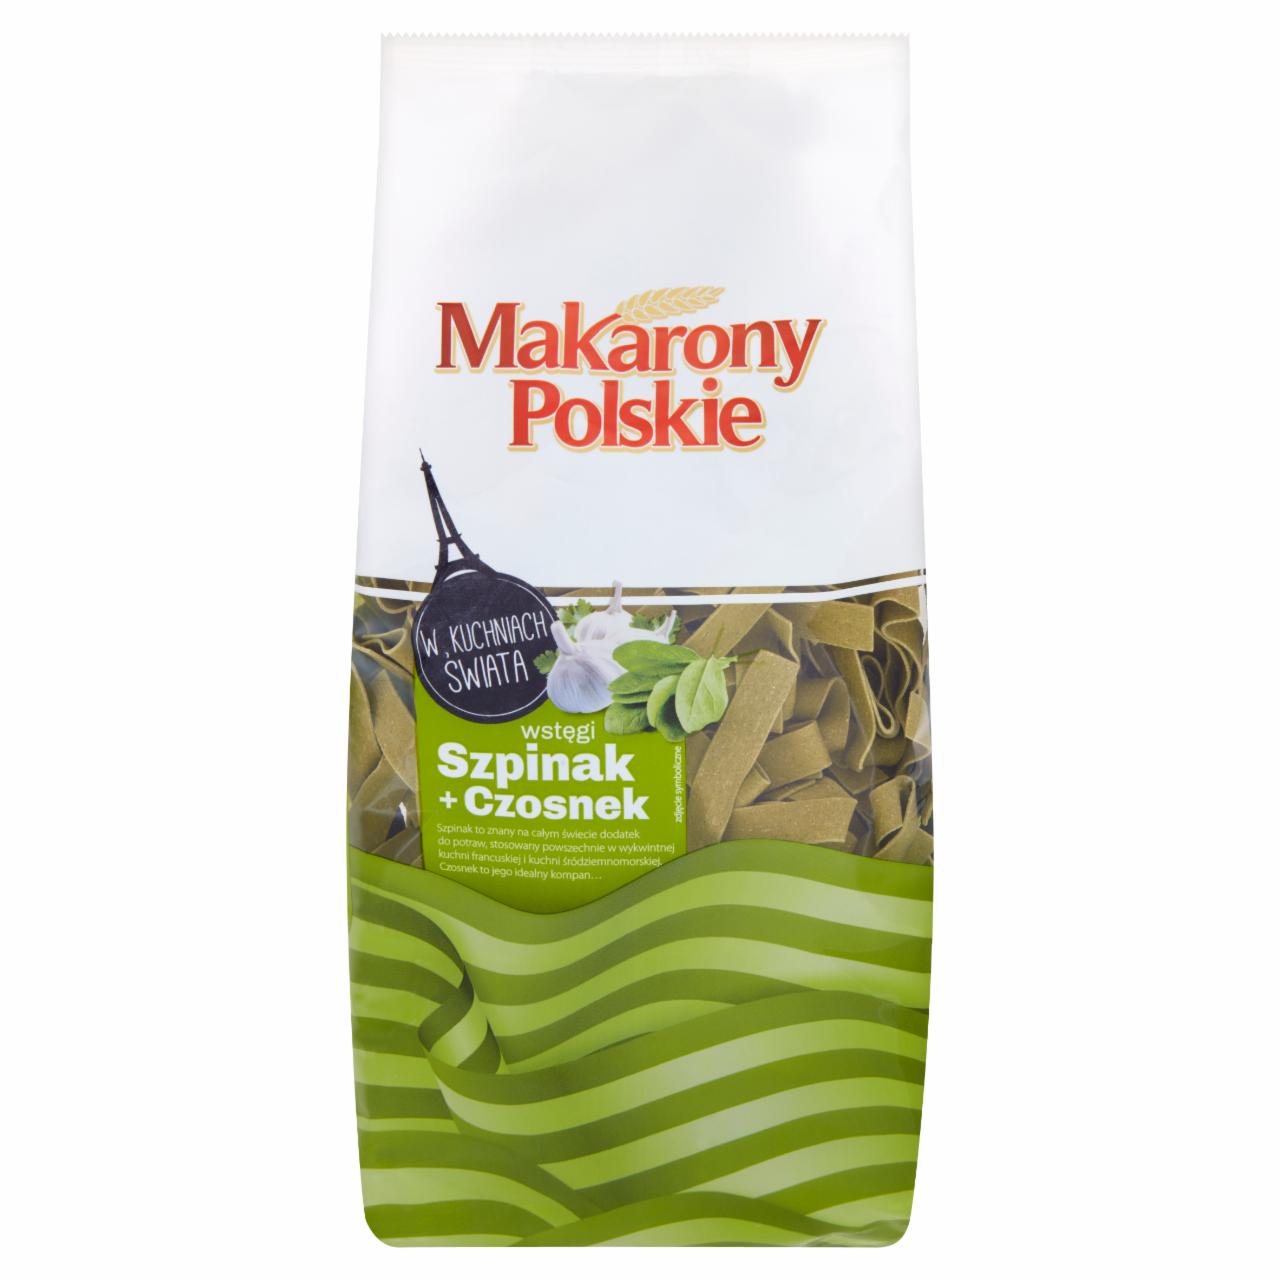 Zdjęcia - Makarony Polskie Makaron wstęgi szpinak + czosnek 400 g